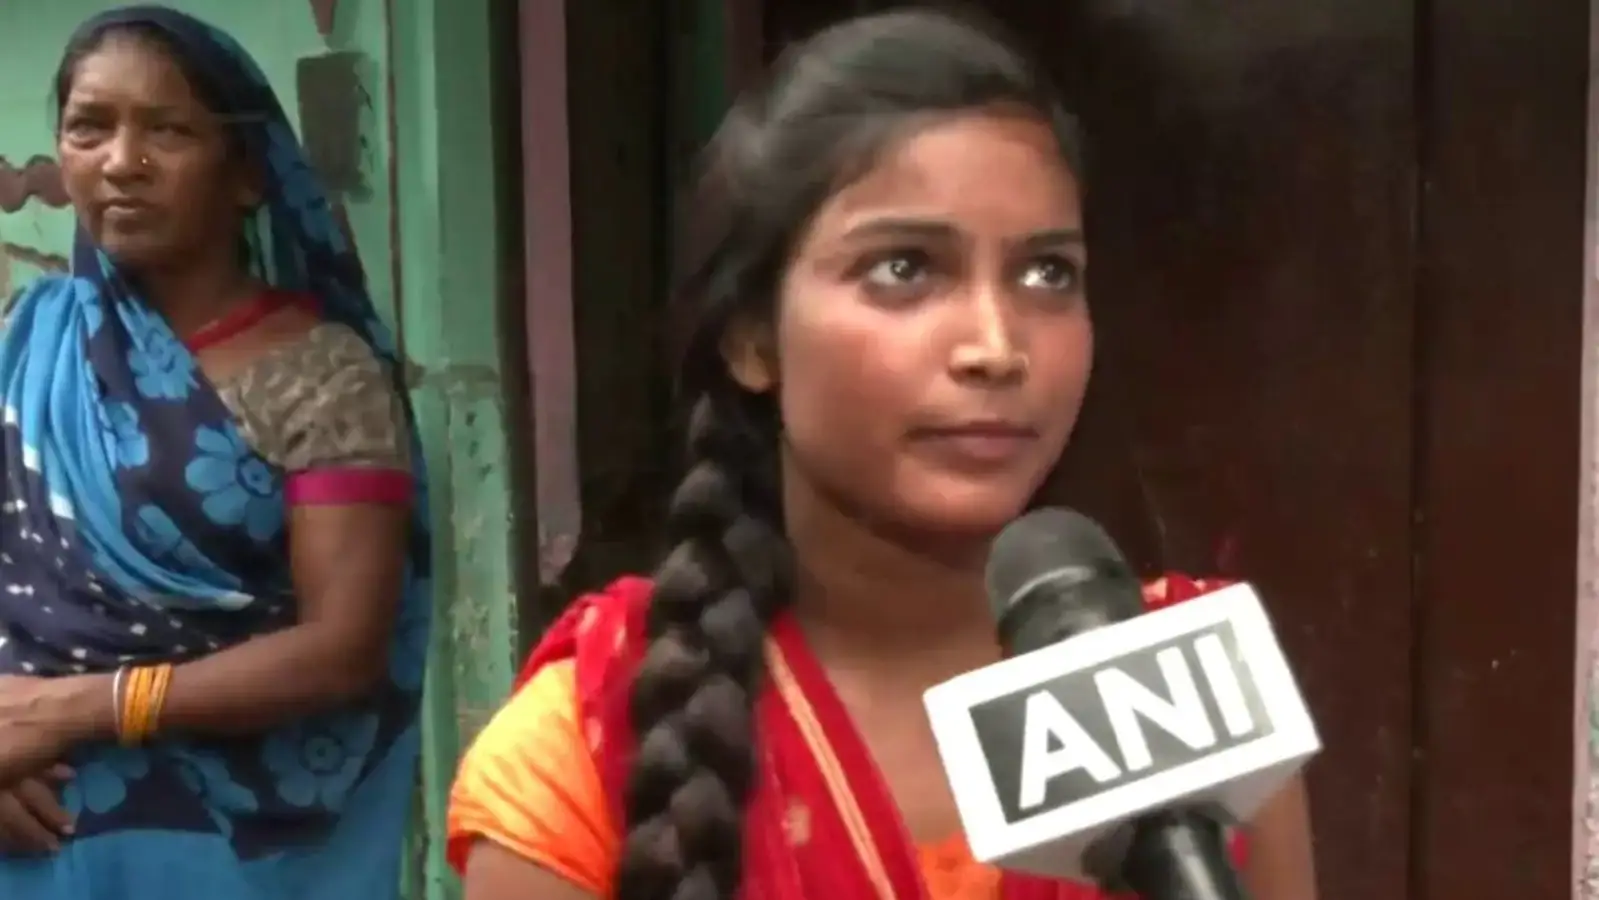  'कंडोम' का जवाब पाने वाली बिहार की लड़की को सेनेटरी पैड बनाने वाली कंपनी ने साल भर की आपूर्ति की पेशकश |  भारत की ताजा खबर
